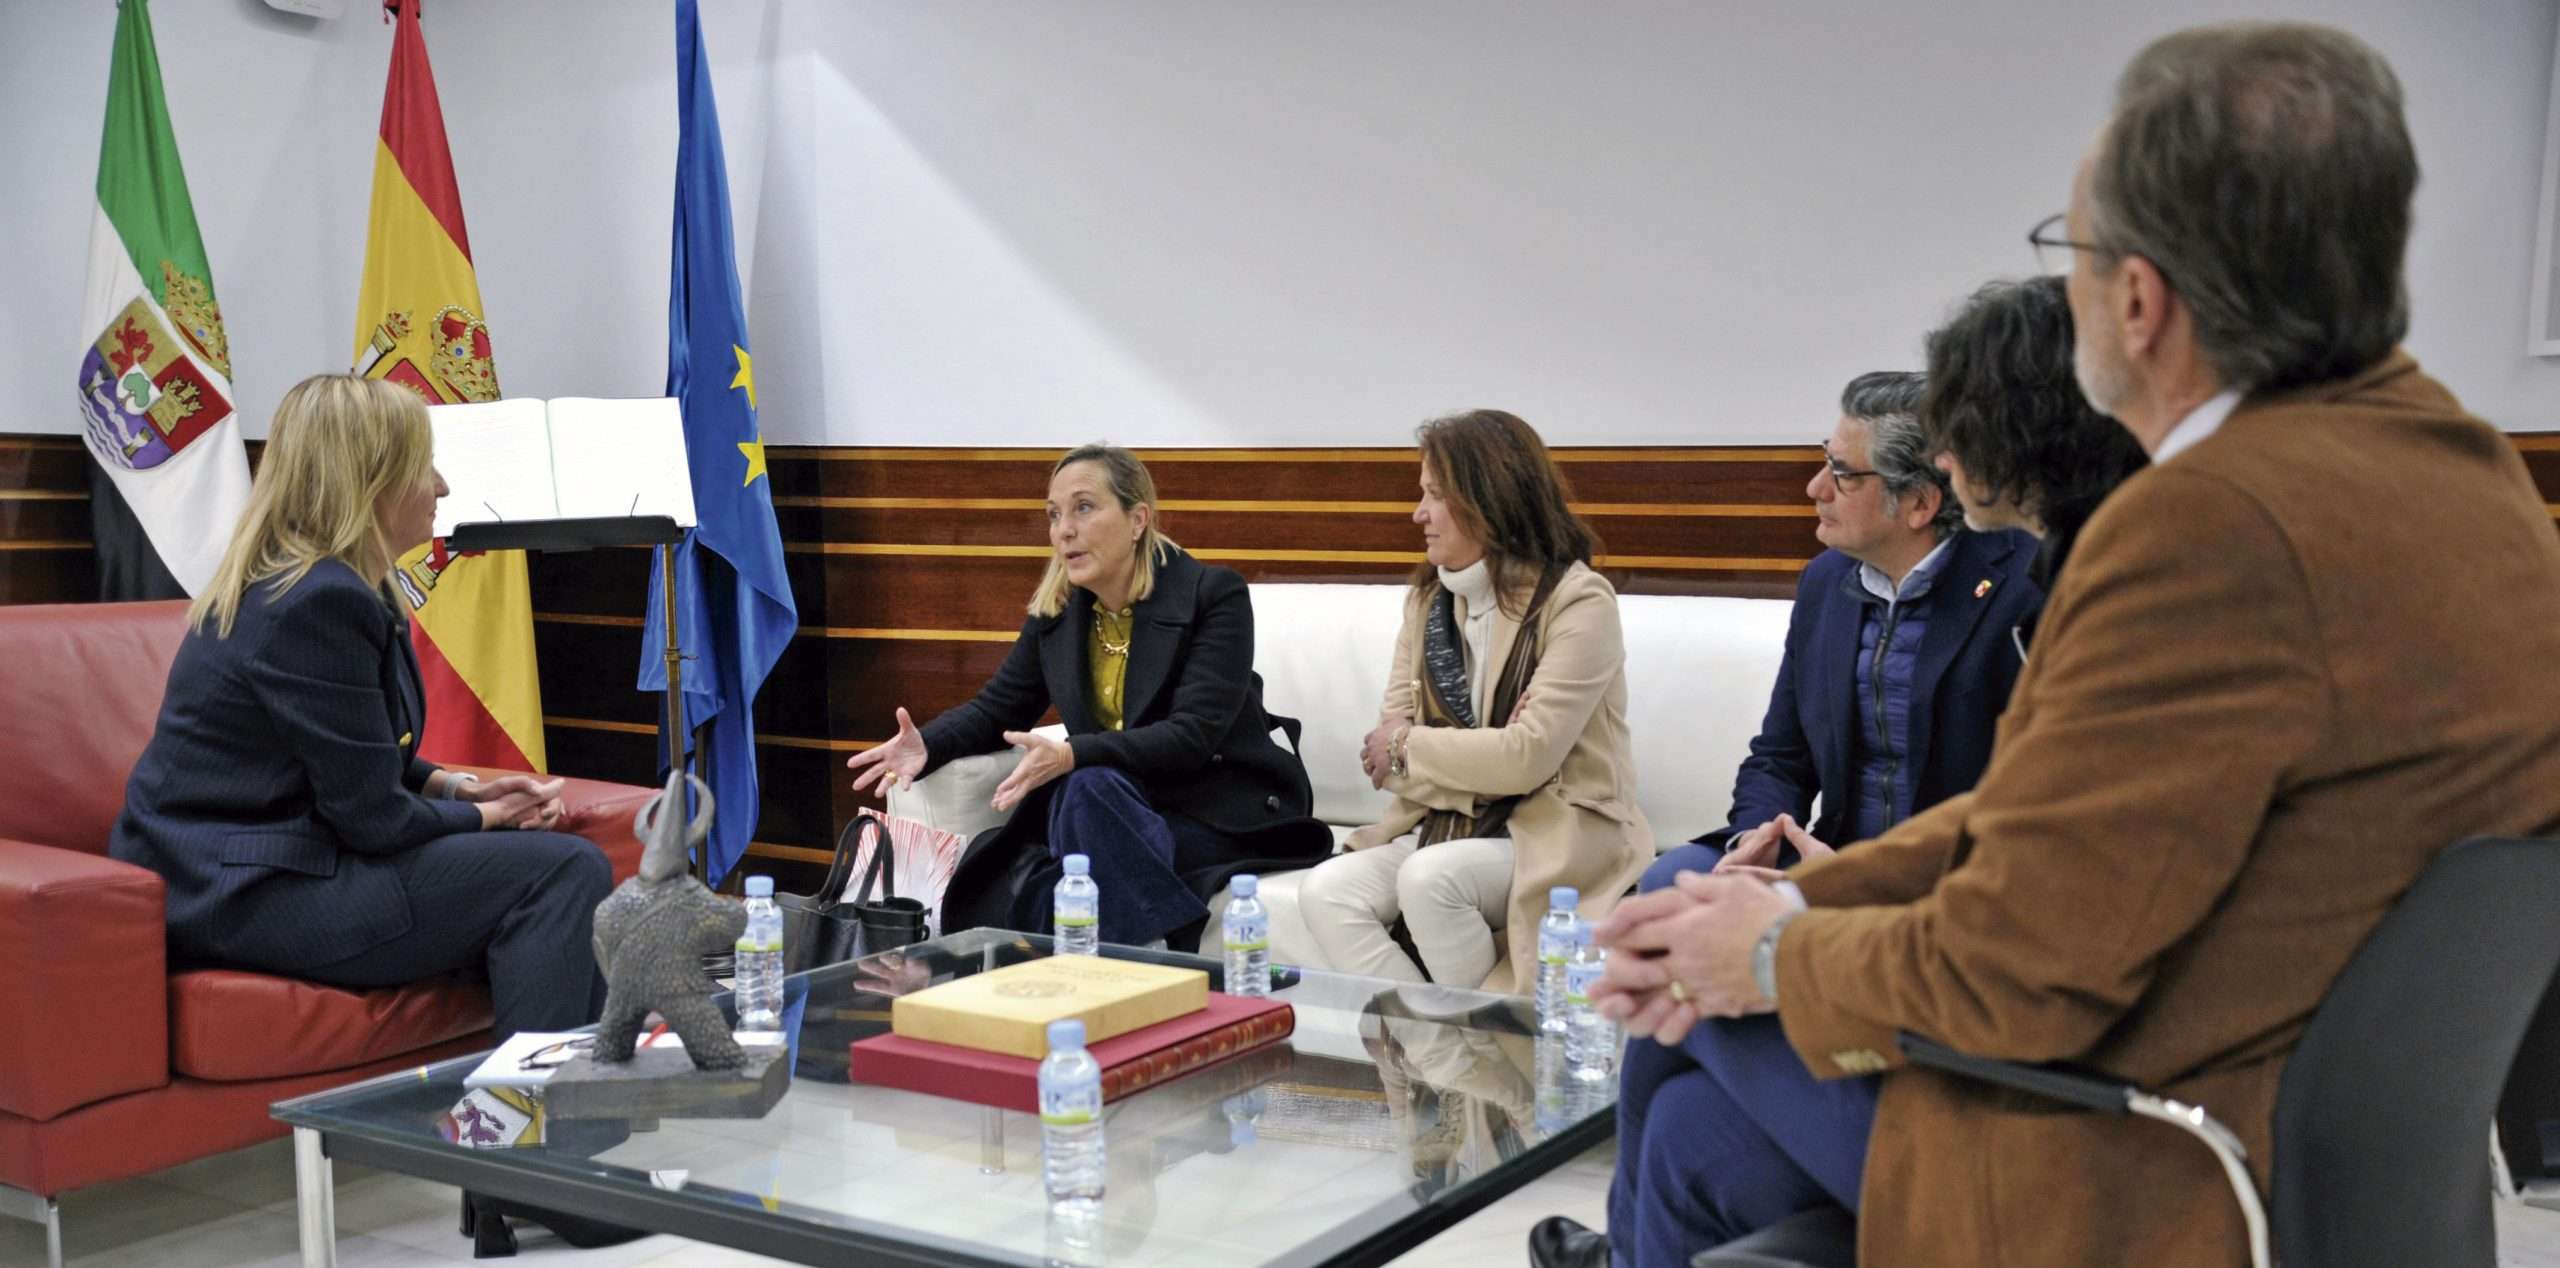 Imagen de archivo de una visita de los responsables del centro educativo a la Asamblea. Foto: Asamblea de Extremadura